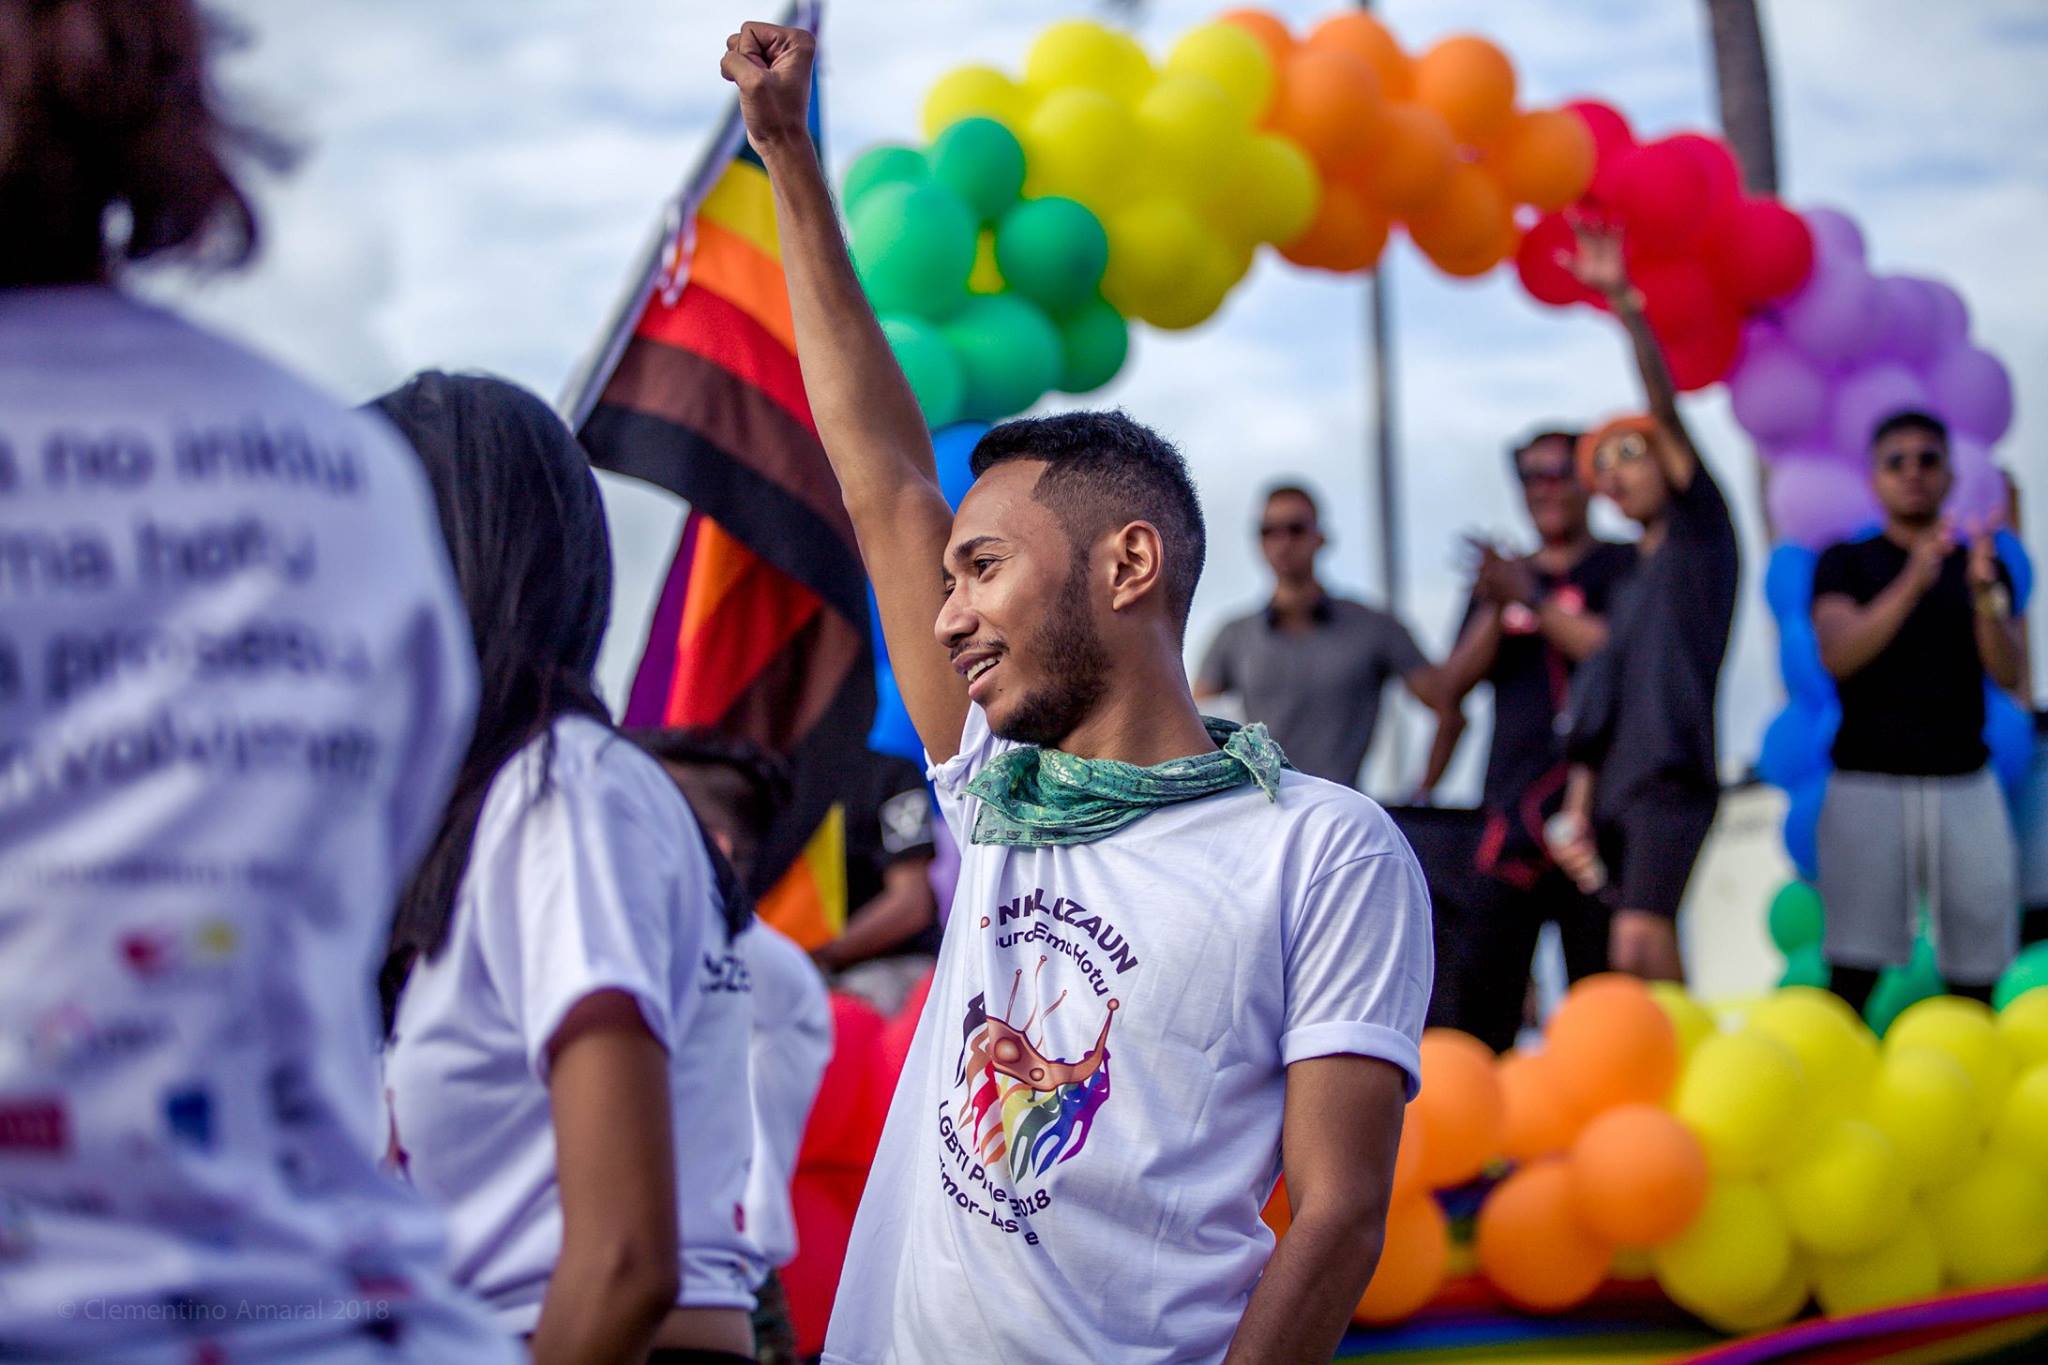 Les membres de la communauté défilent lors du défilé de la Fierté 2018 au Timor-Leste. Crédit : Clementino Amaral